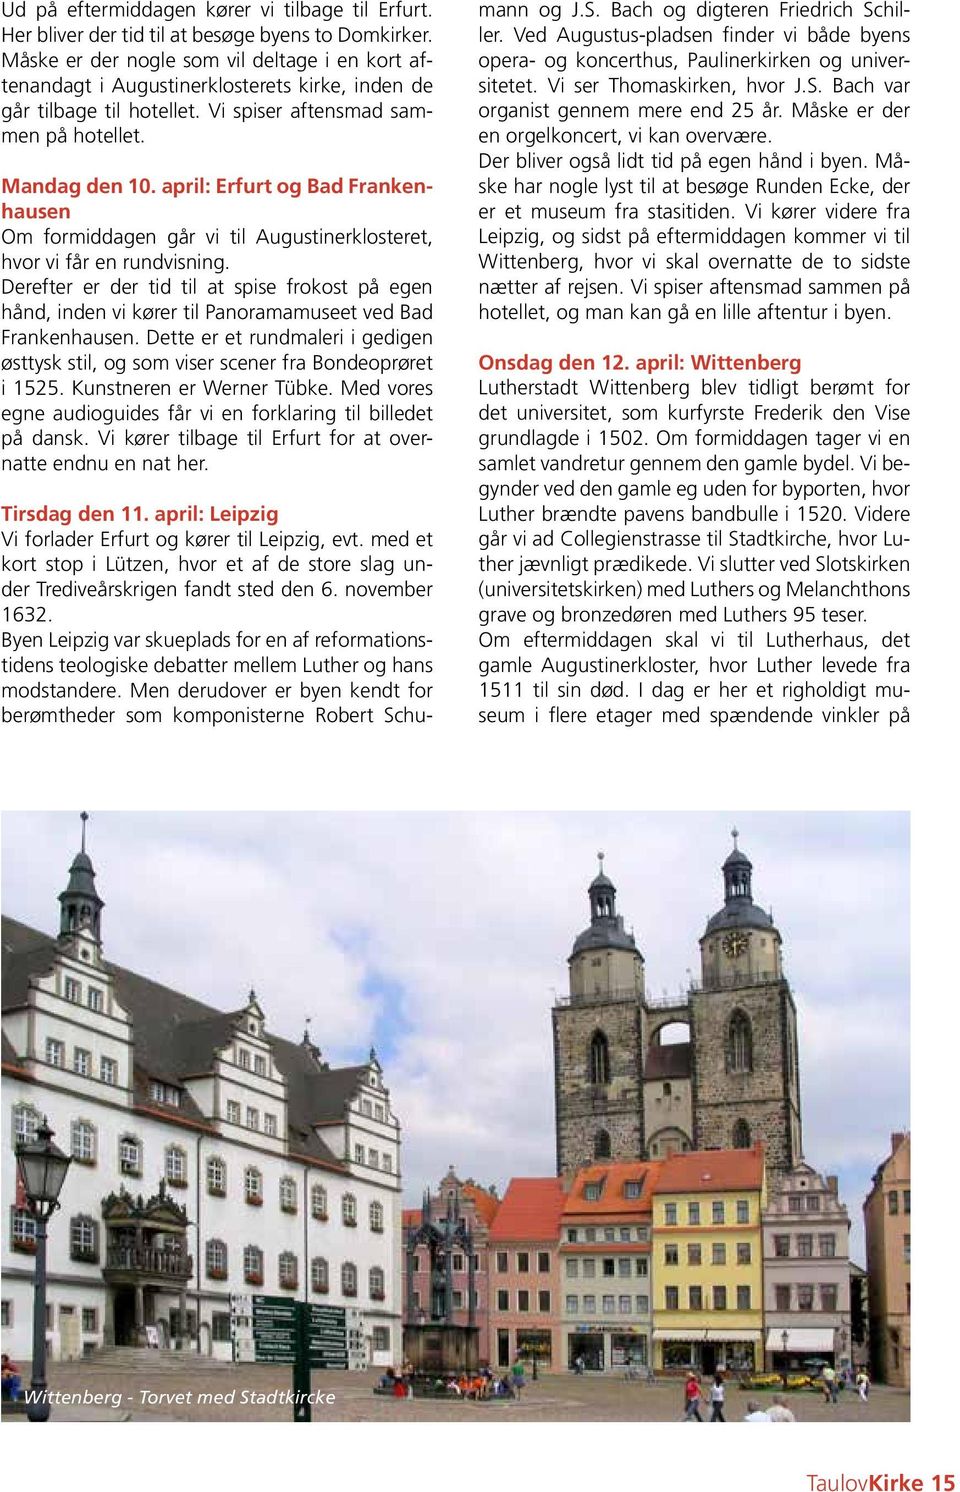 april: Erfurt og Bad Frankenhausen Om formiddagen går vi til Augustinerklosteret, hvor vi får en rundvisning.